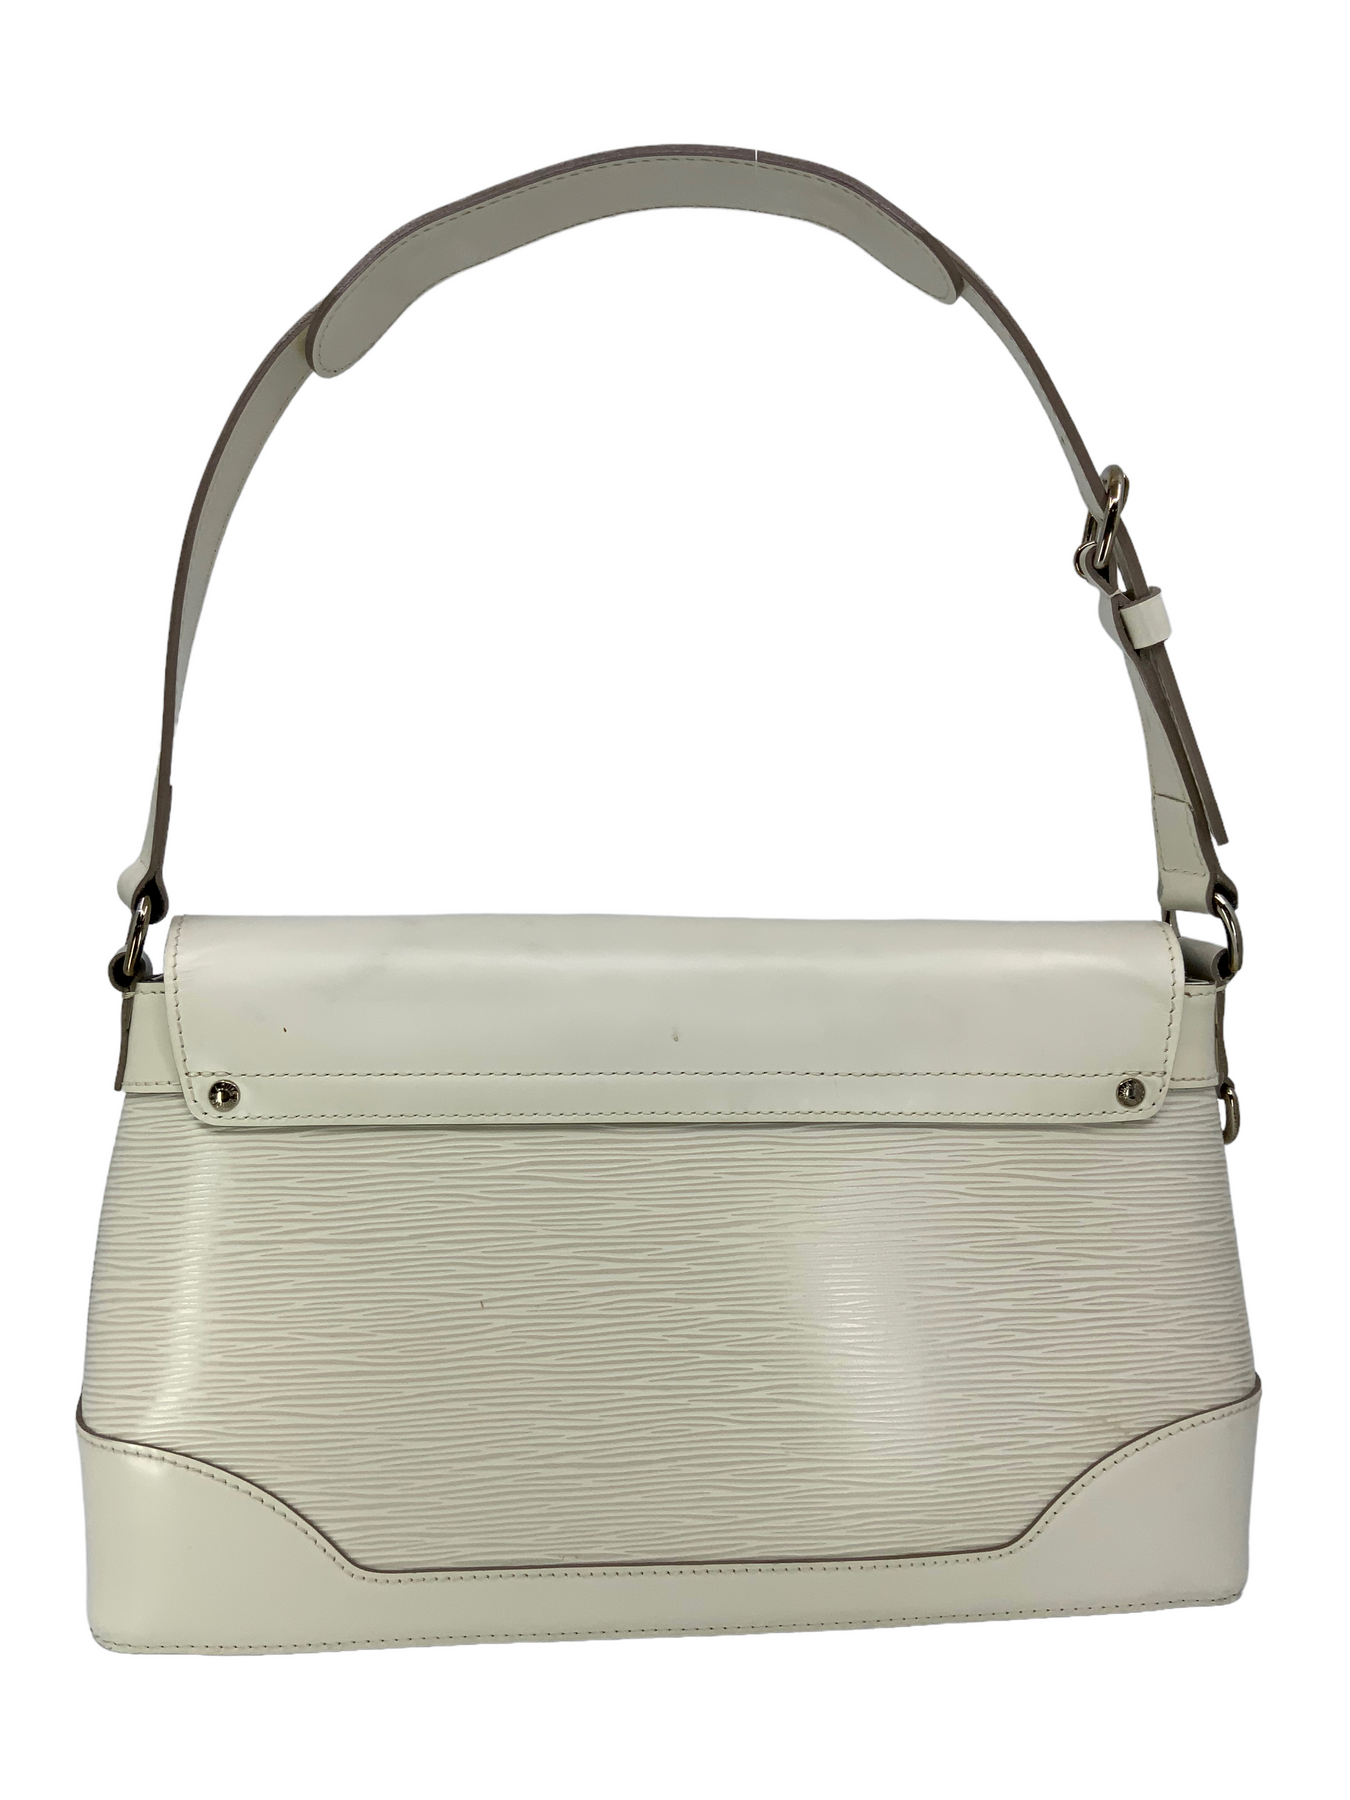 Louis Vuitton Epi Bagatelle PM Bag - Consigned Designs